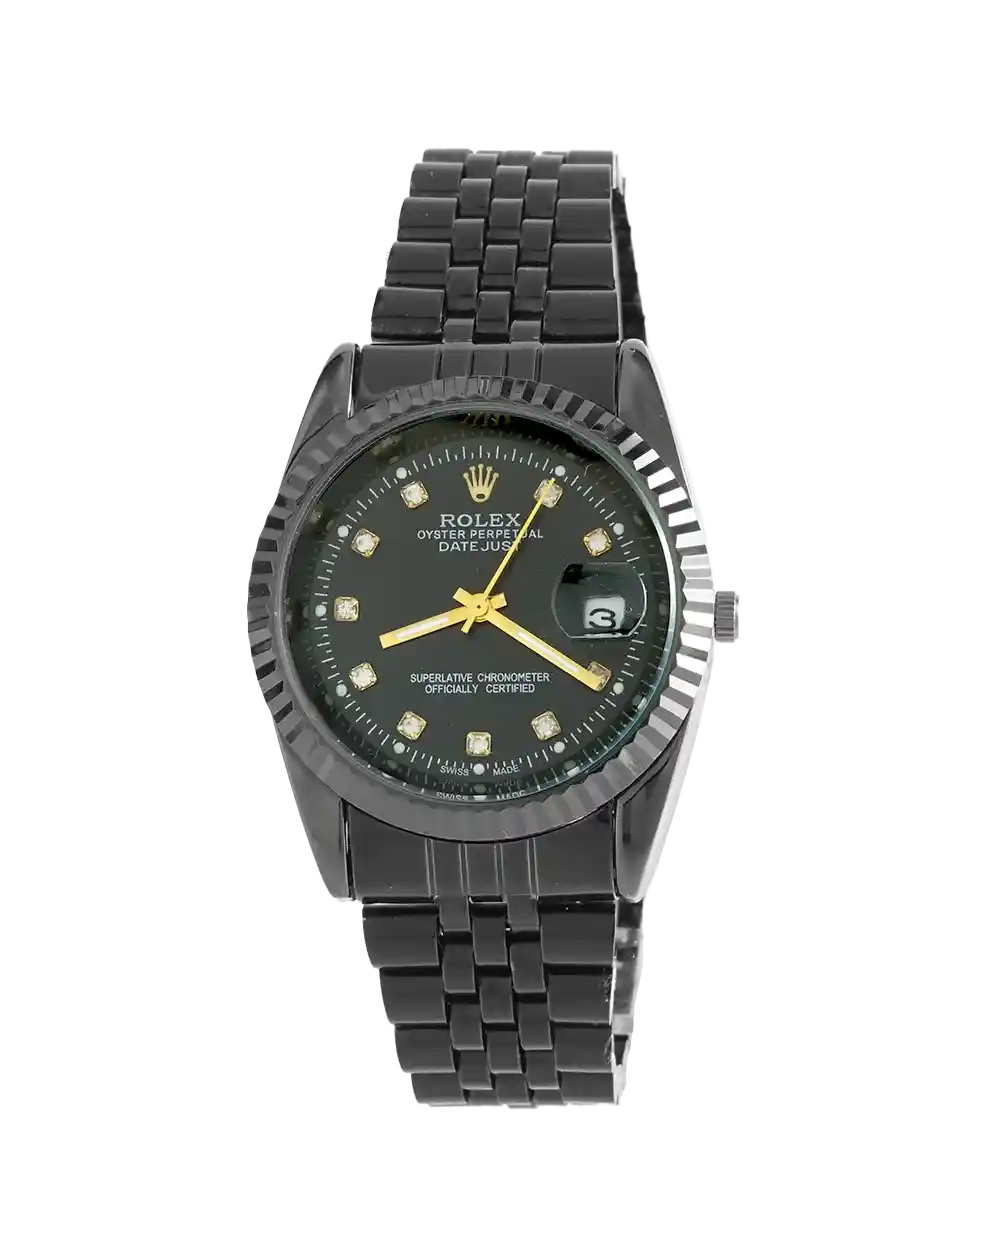 خرید ساعت مچی مردانه رولکس ROLEX طرح دیت جاست مدل 2114 بند استیل مشکی و صفحه مشکی رنگ ثابت بهترین قیمت و ضمانت به همراه ارسال رایگان